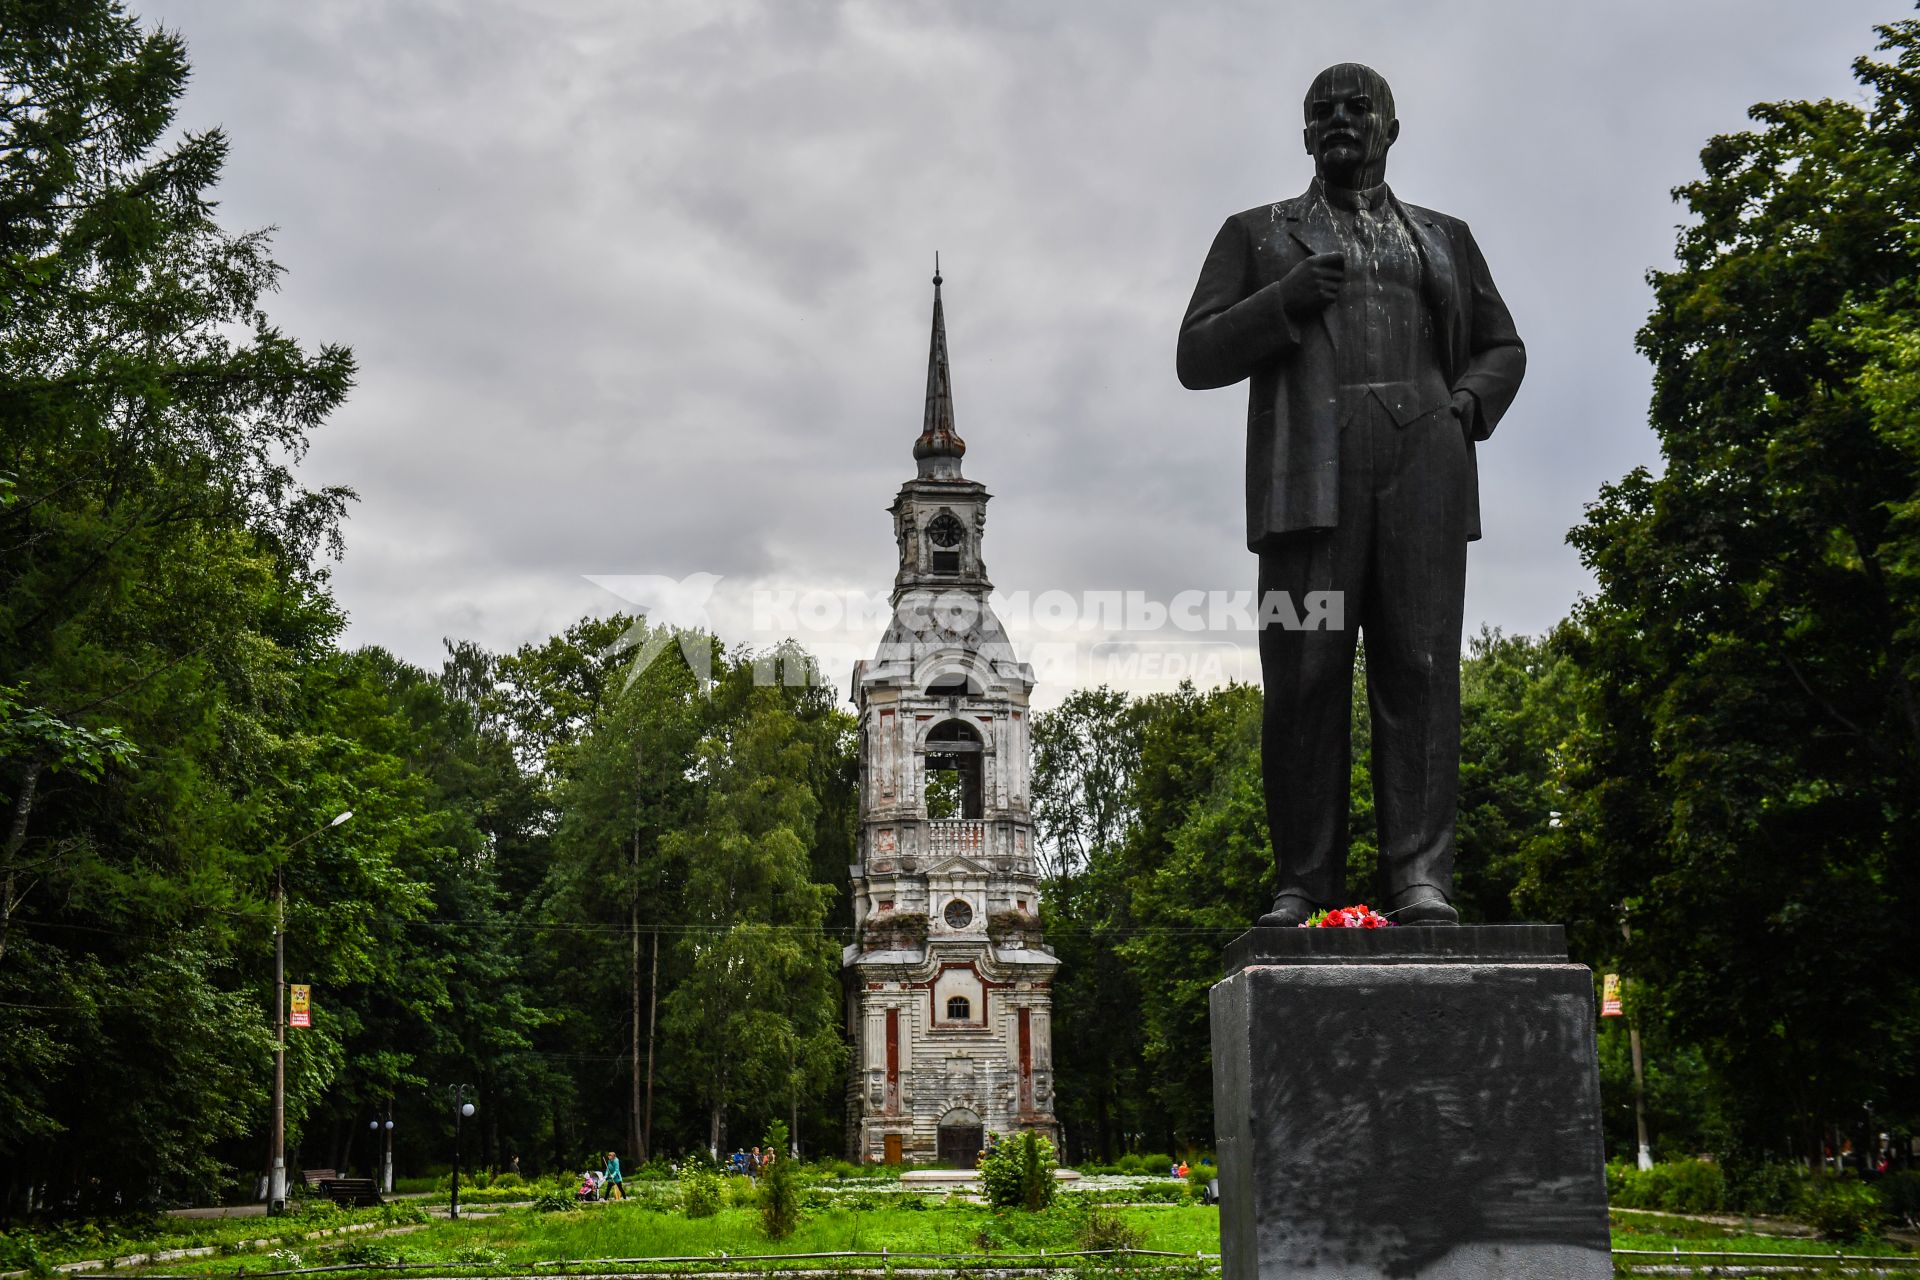 Селигер, Осташков. Старинная колокольня и памятник  ленину в парке `Свобода`.